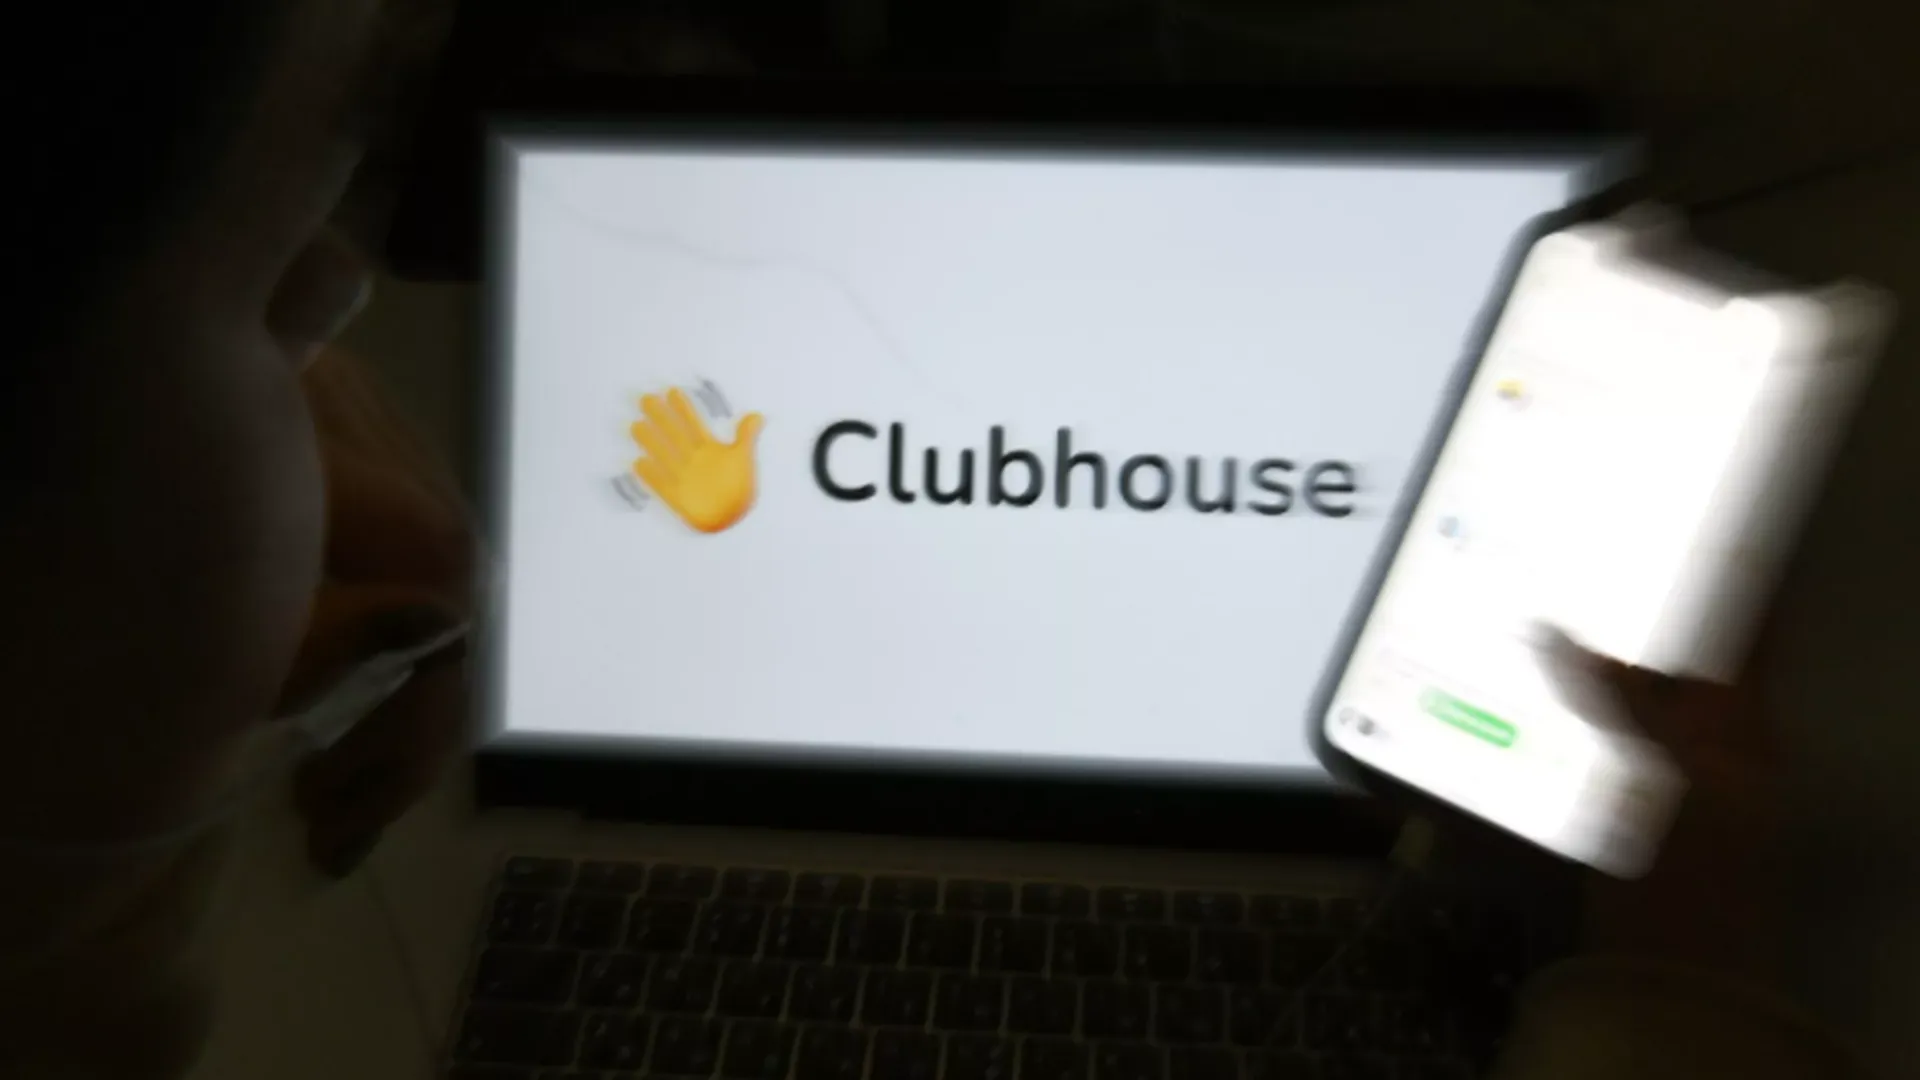 Больше тысячи пользователей Clubhousе собрались в дискуссии с фейковым Дуровым